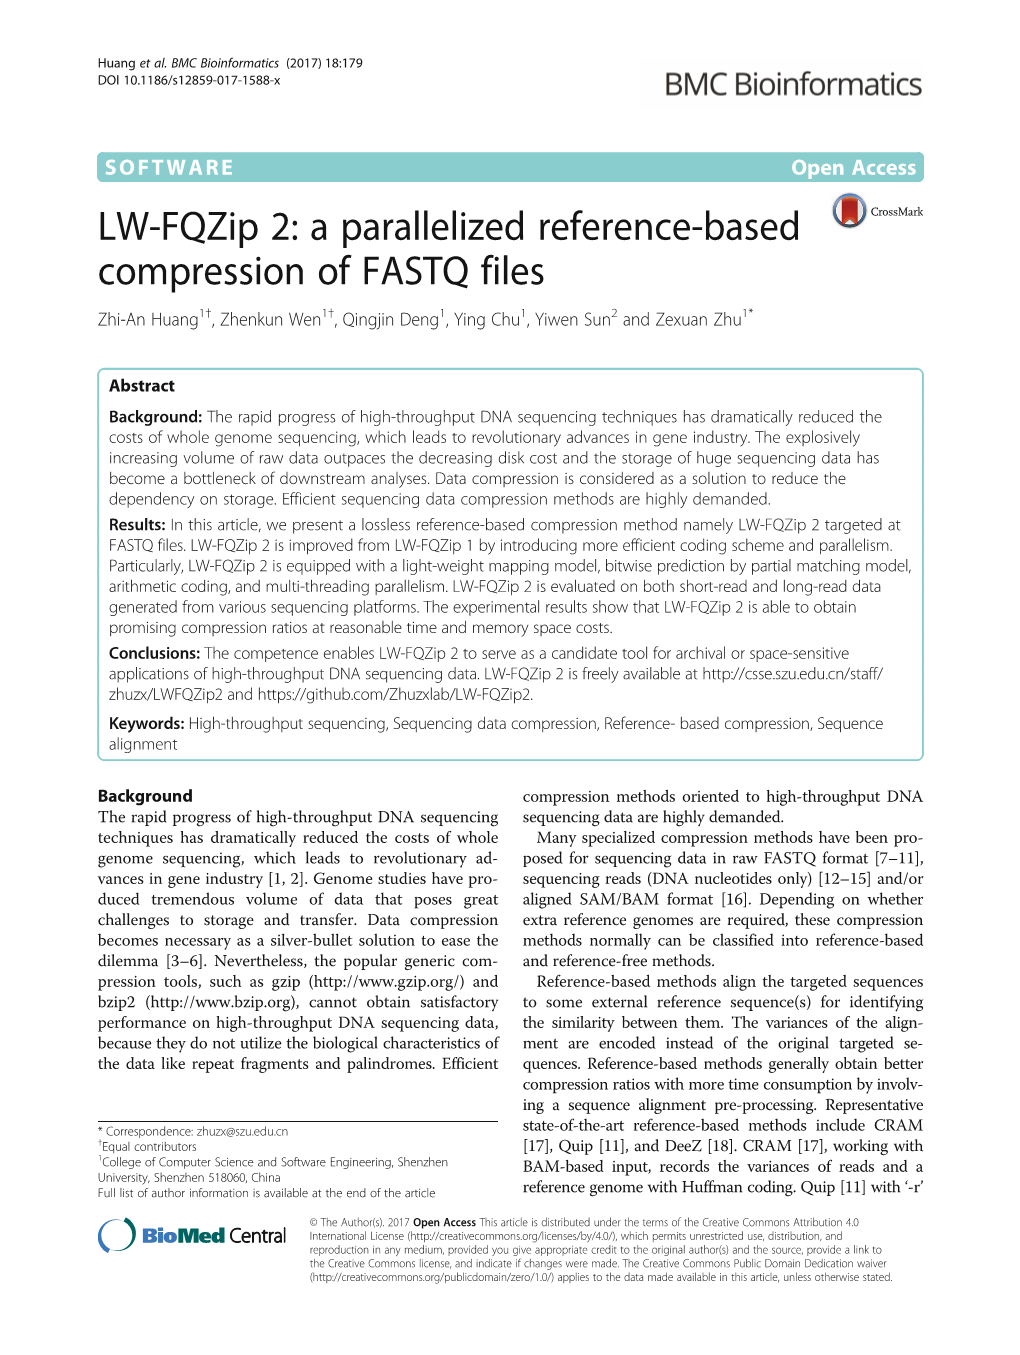 LW-Fqzip 2: a Parallelized Reference-Based Compression of FASTQ Files Zhi-An Huang1†, Zhenkun Wen1†, Qingjin Deng1, Ying Chu1, Yiwen Sun2 and Zexuan Zhu1*